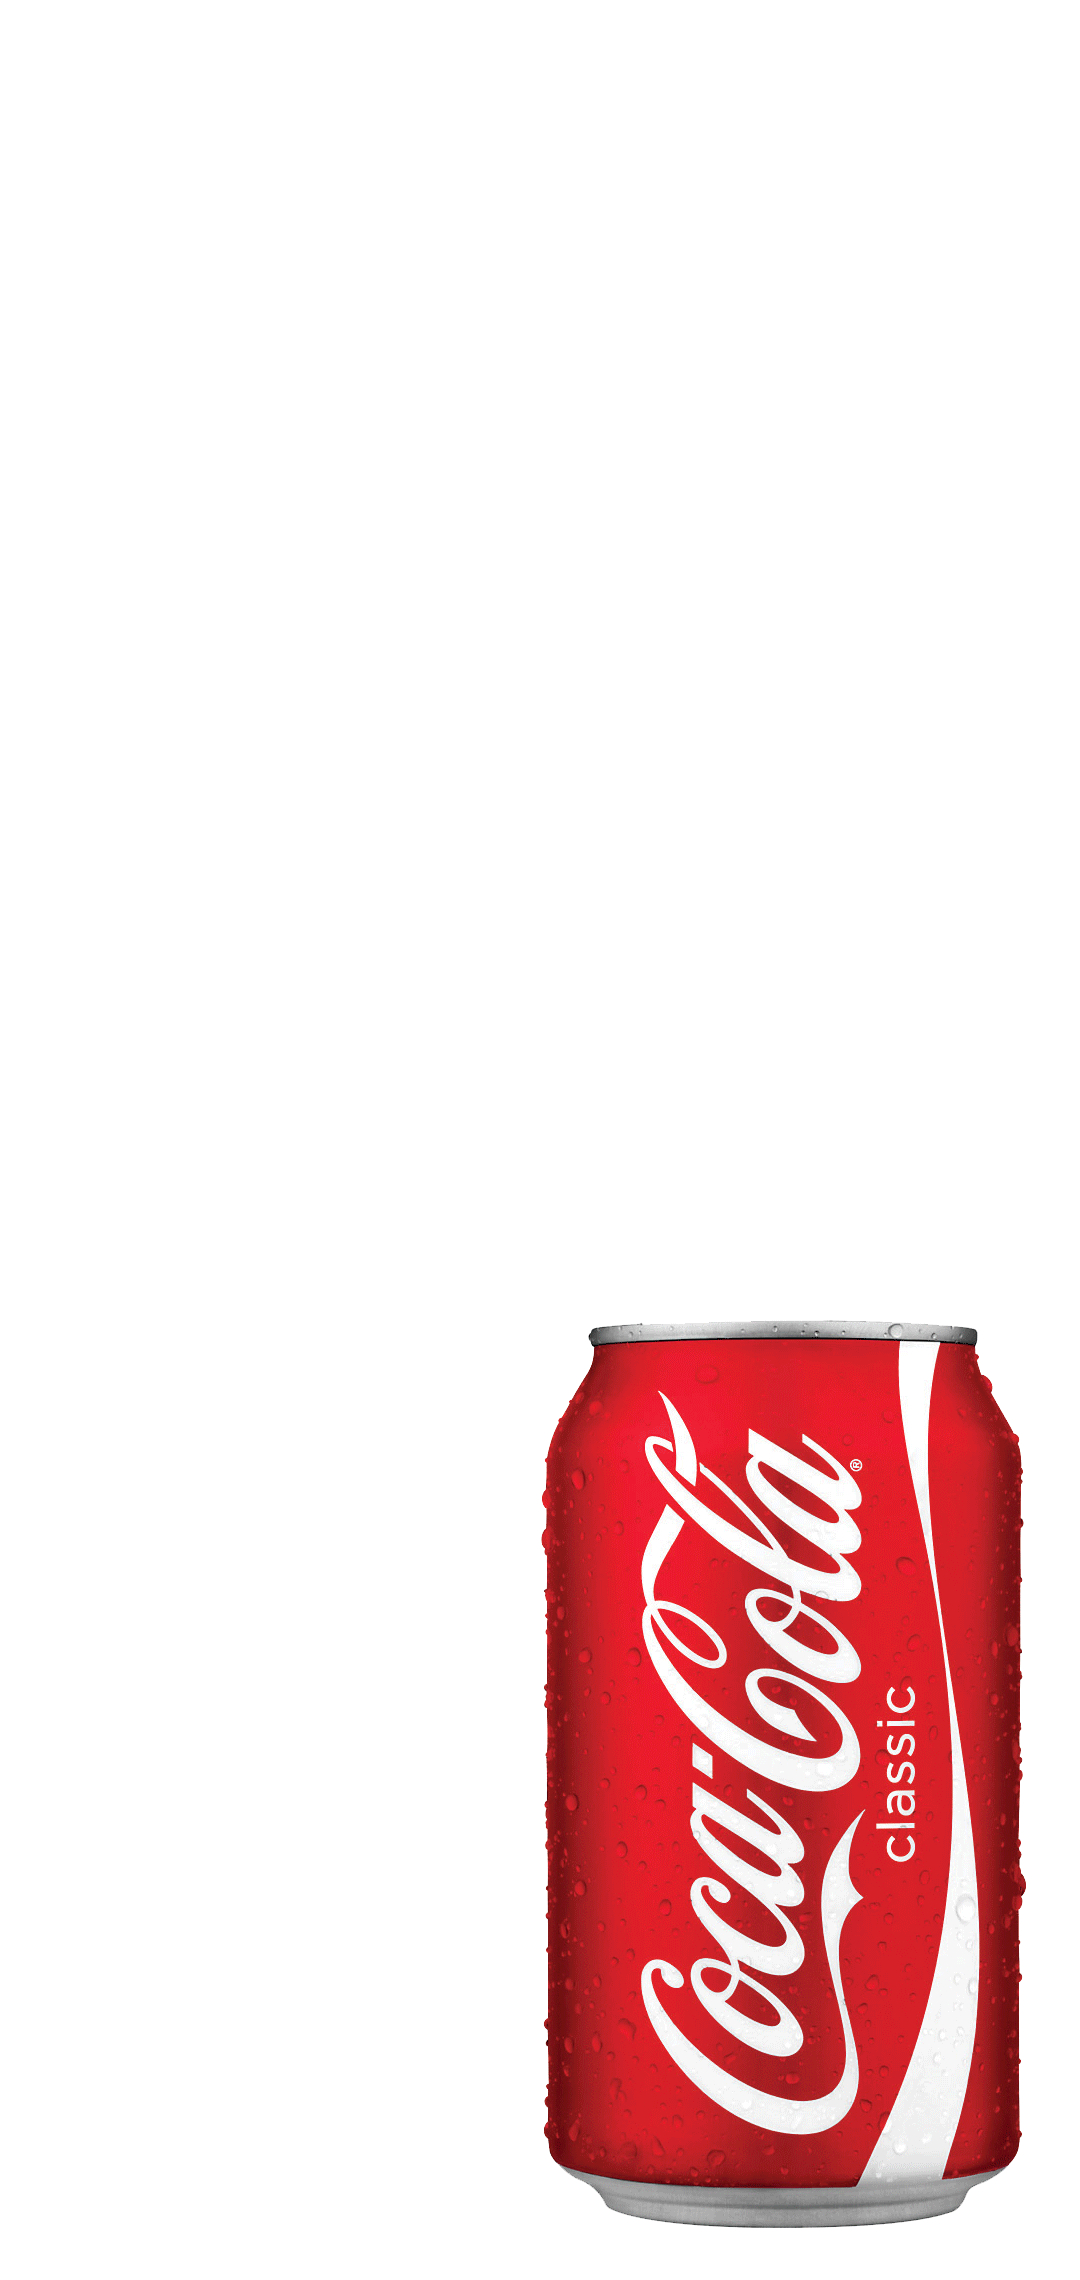 コカ コーラ 缶 Aquos Sense4 Lite スマホ壁紙 待ち受け スマラン